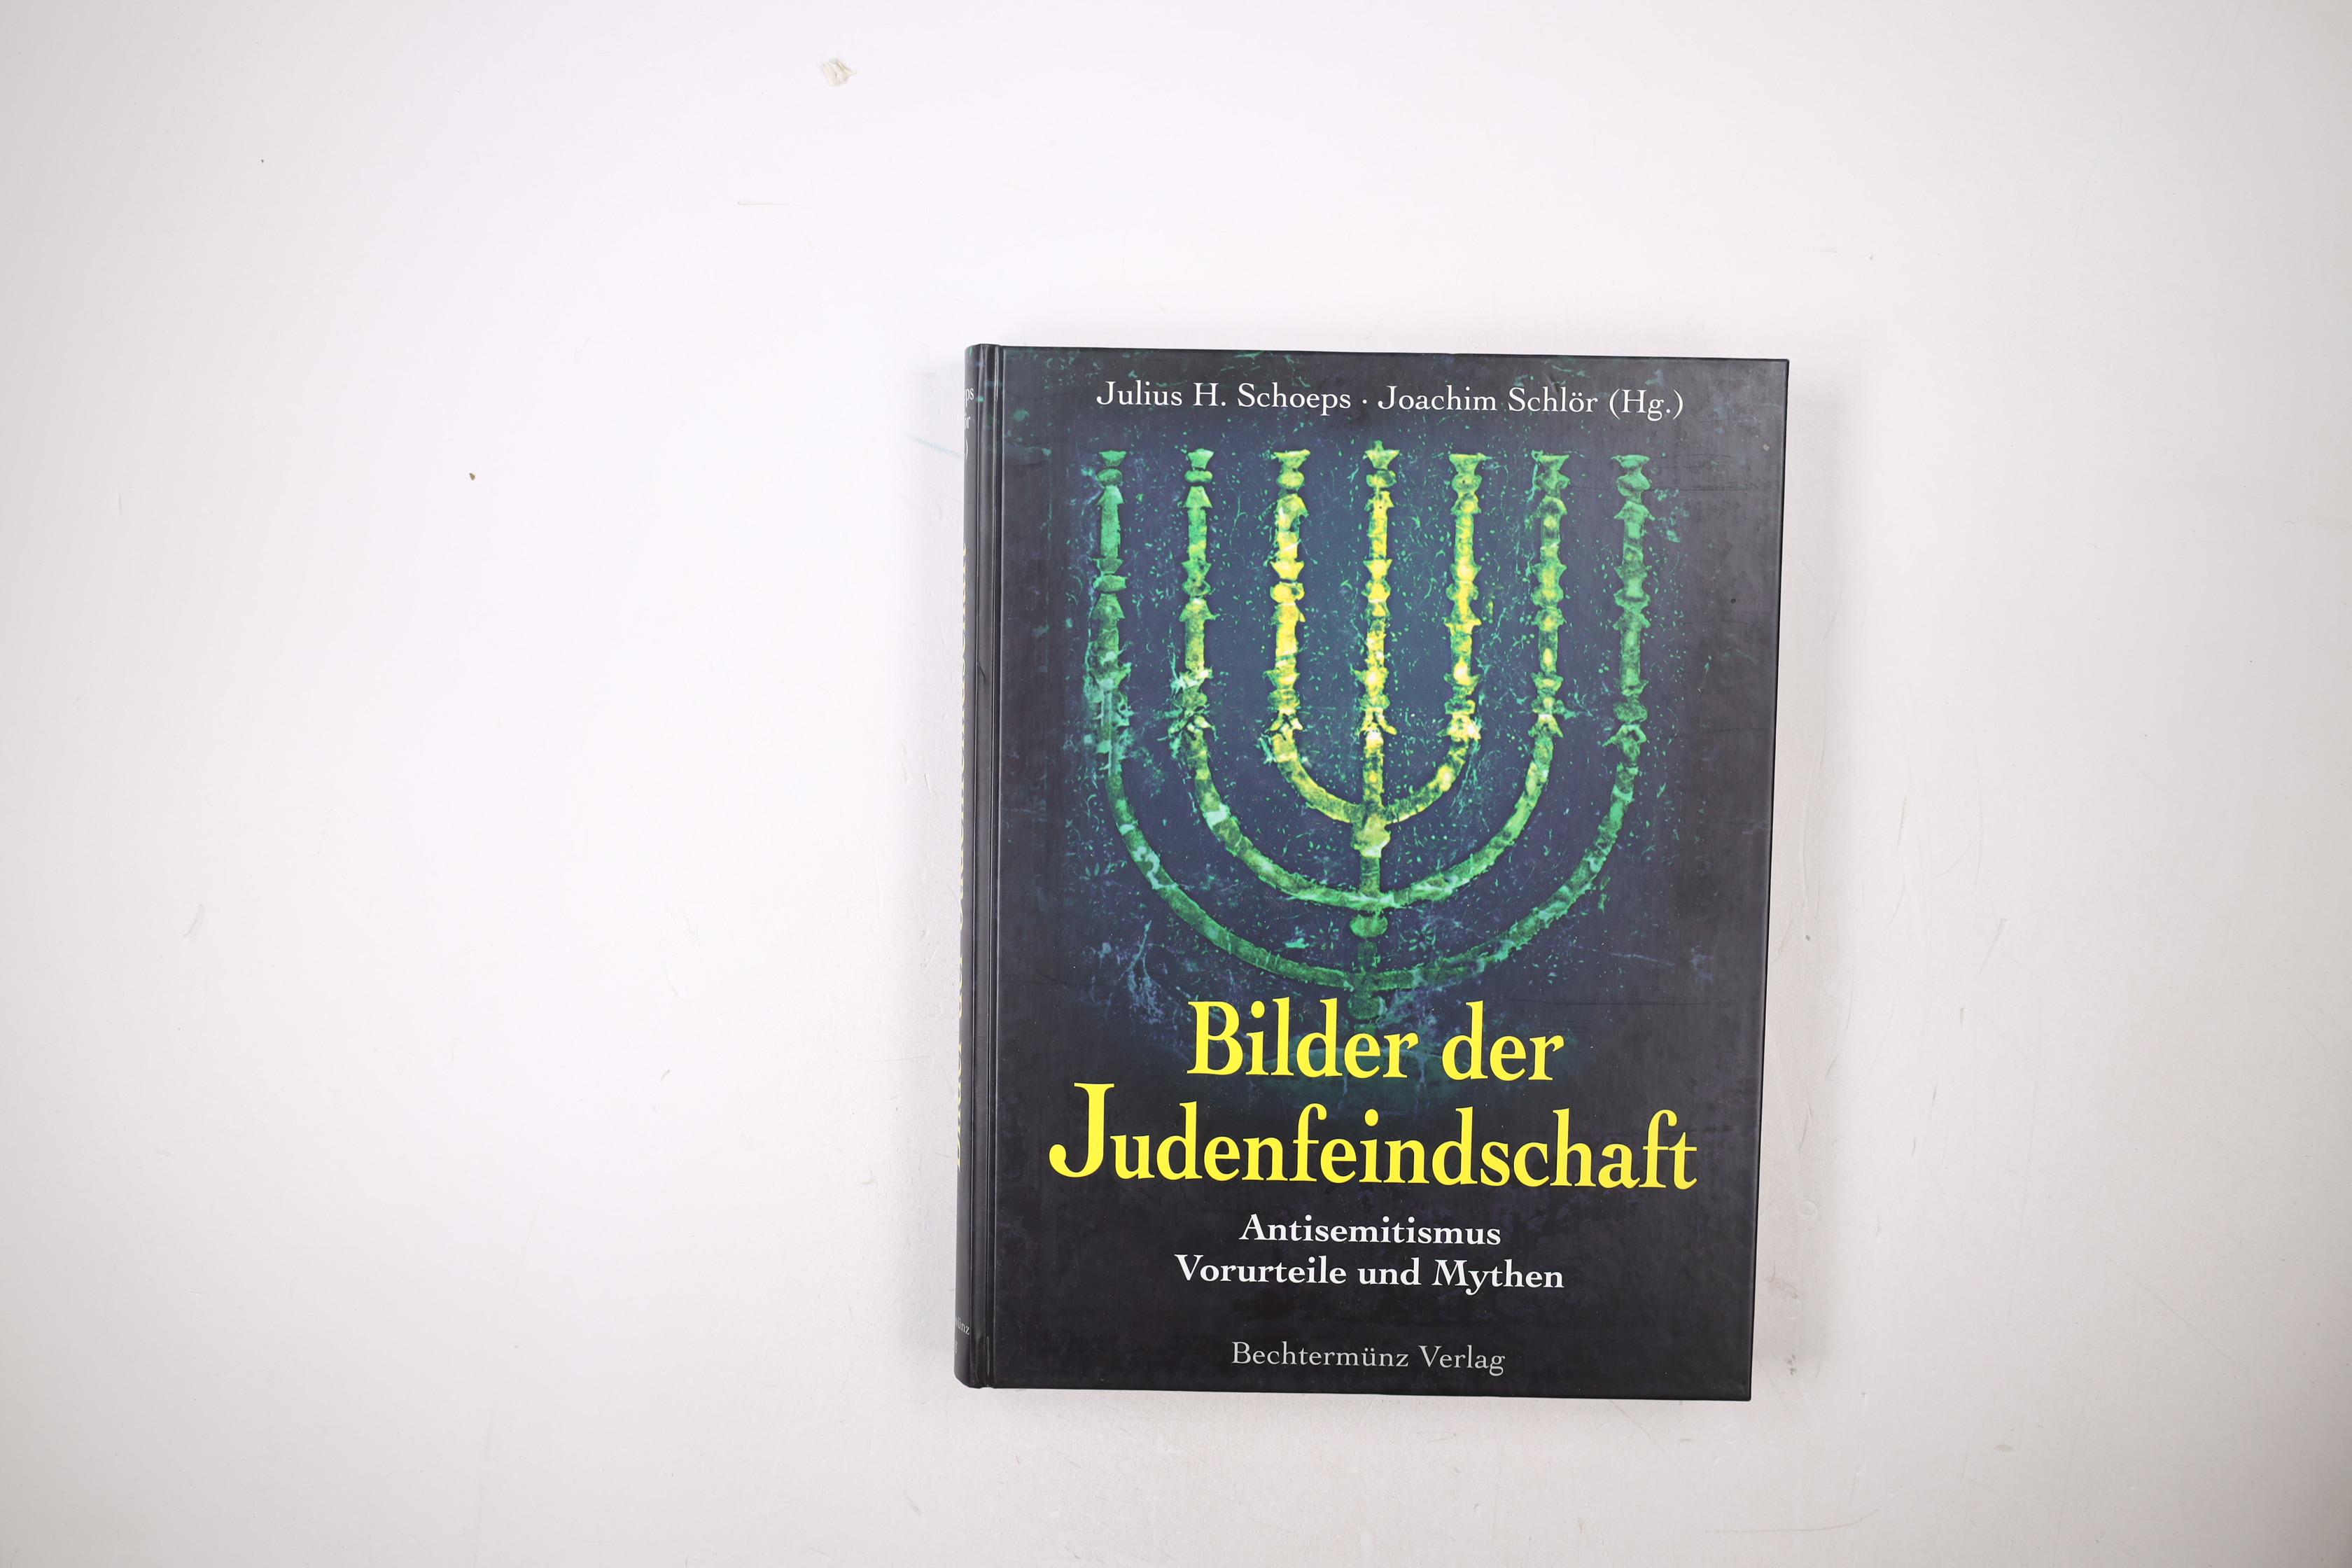 BILDER DER JUDENFEINDSCHAFT. Antisemitismus - Vorurteile und Mythen - Schoeps Julius H. (Hrsg.) und Joachim Schlör (Hrsg.)